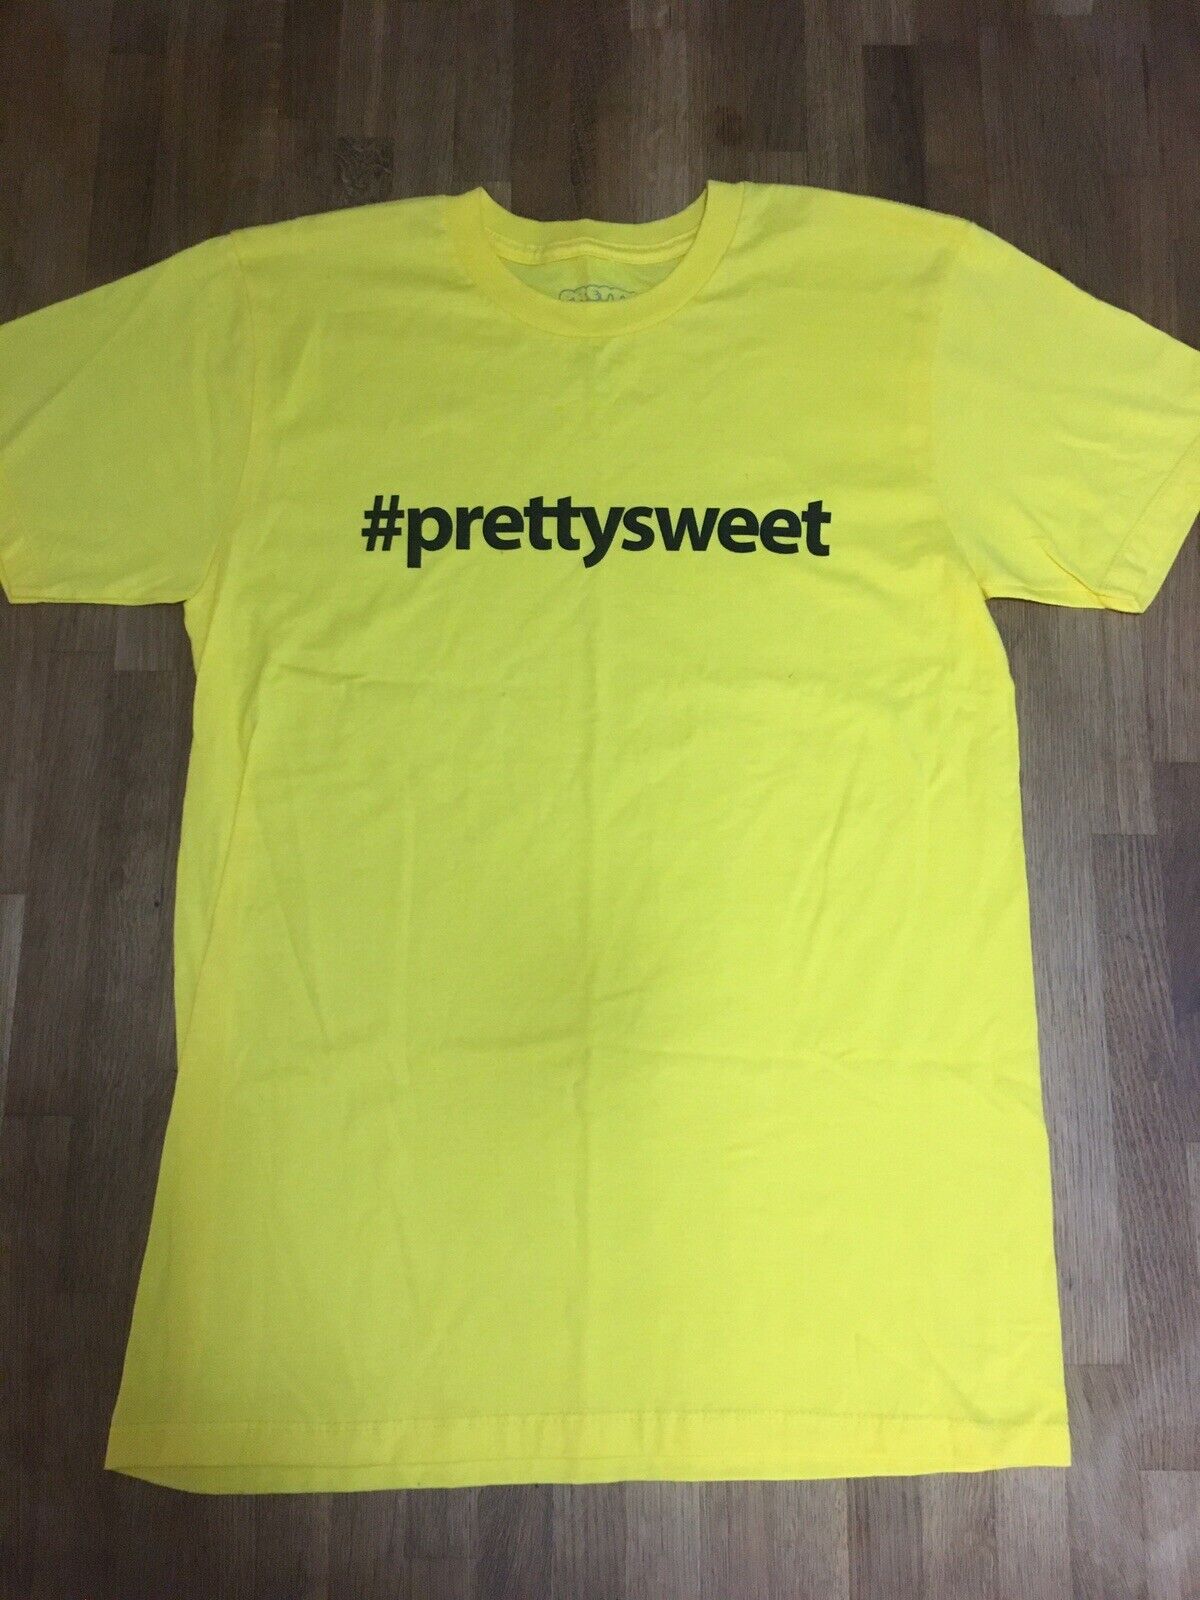 Girl &amp; Chocolate Cinema Pretty Sweet Hashtag T-shirt Yellow S | eBay